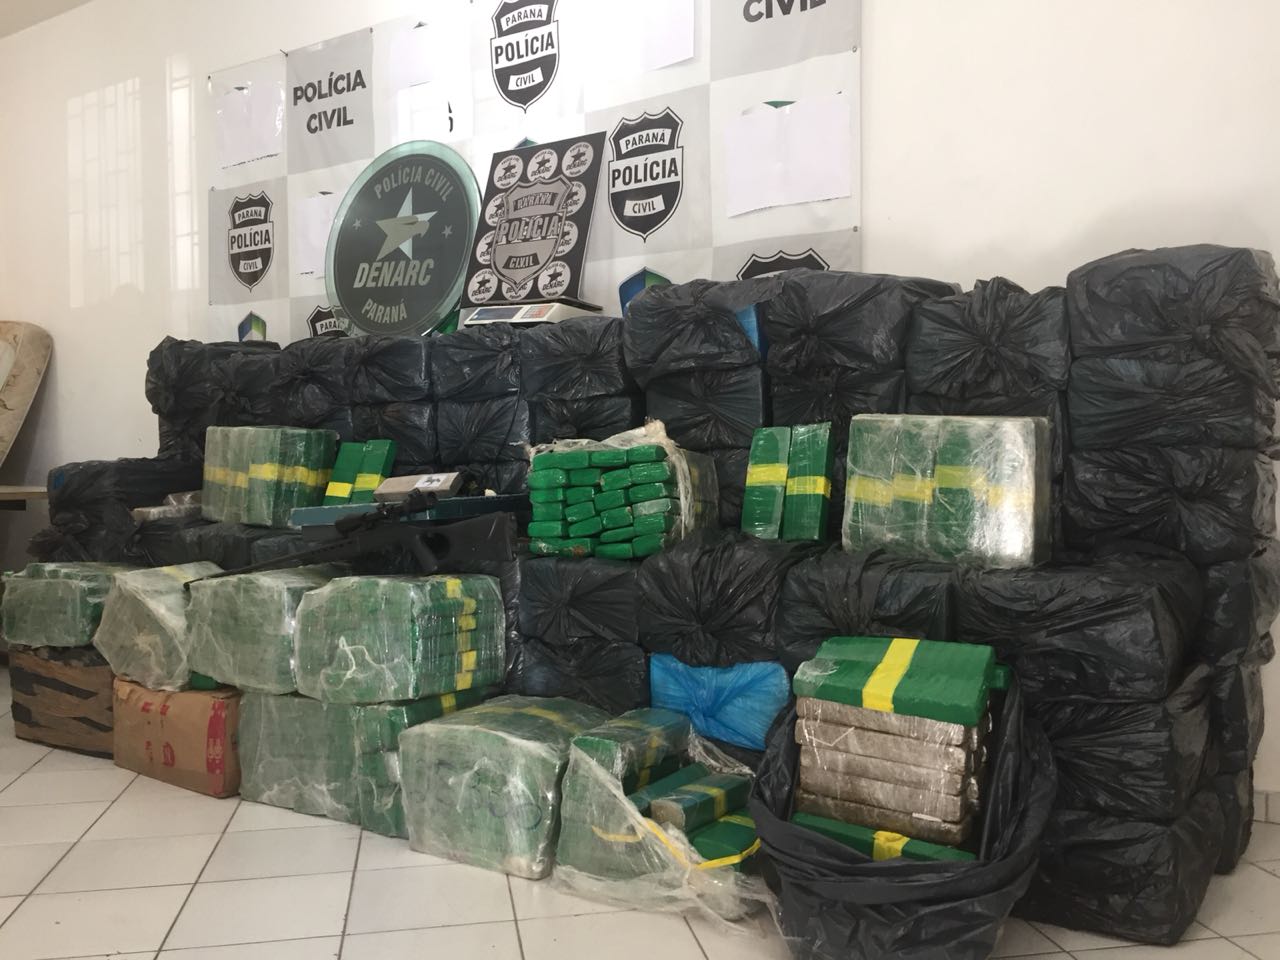  Quase três toneladas de maconha são apreendidas em operação policial na RMC